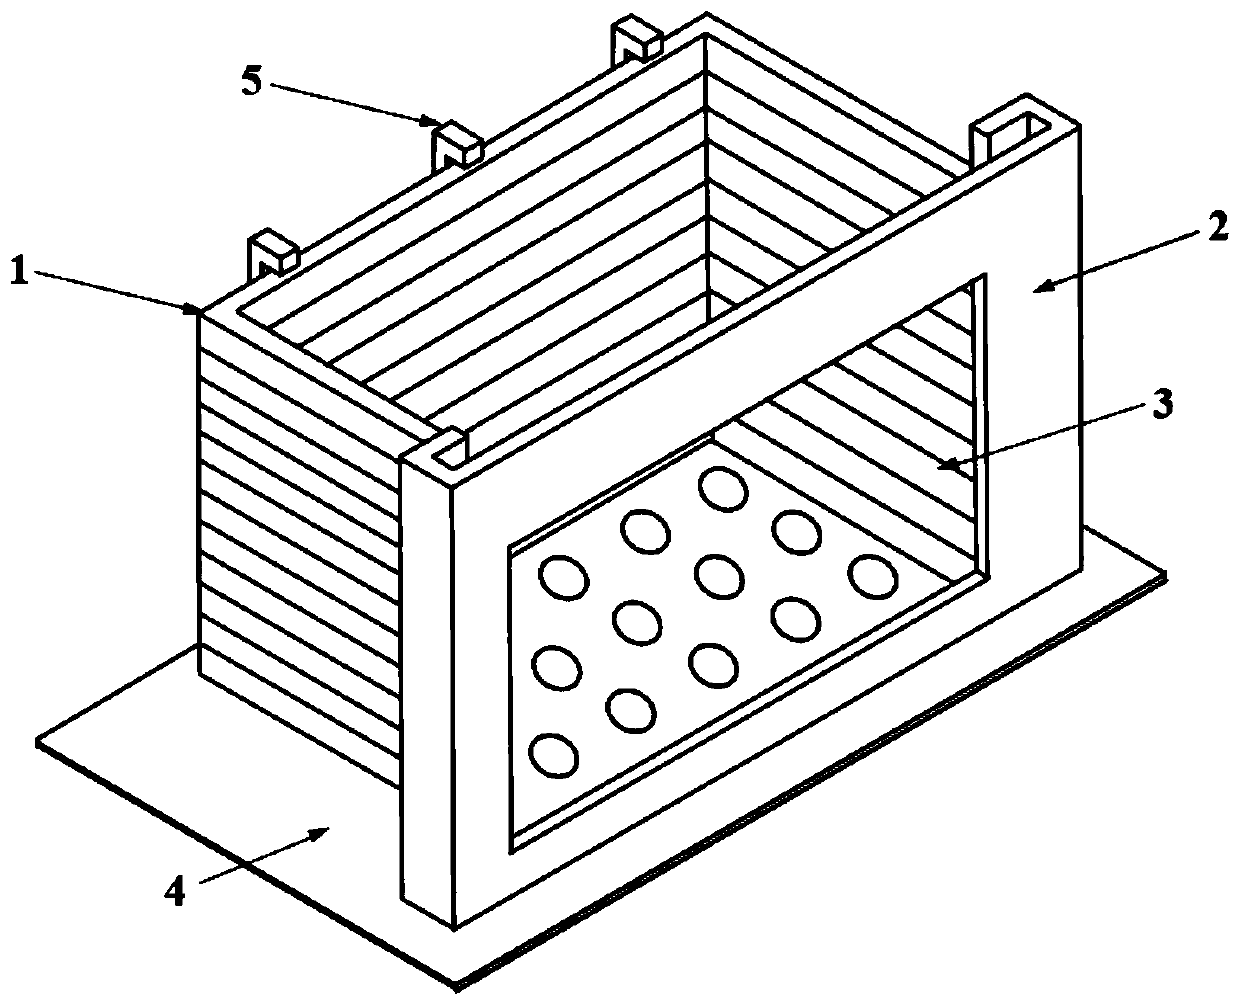 Transparent shearing model box for vibration table test